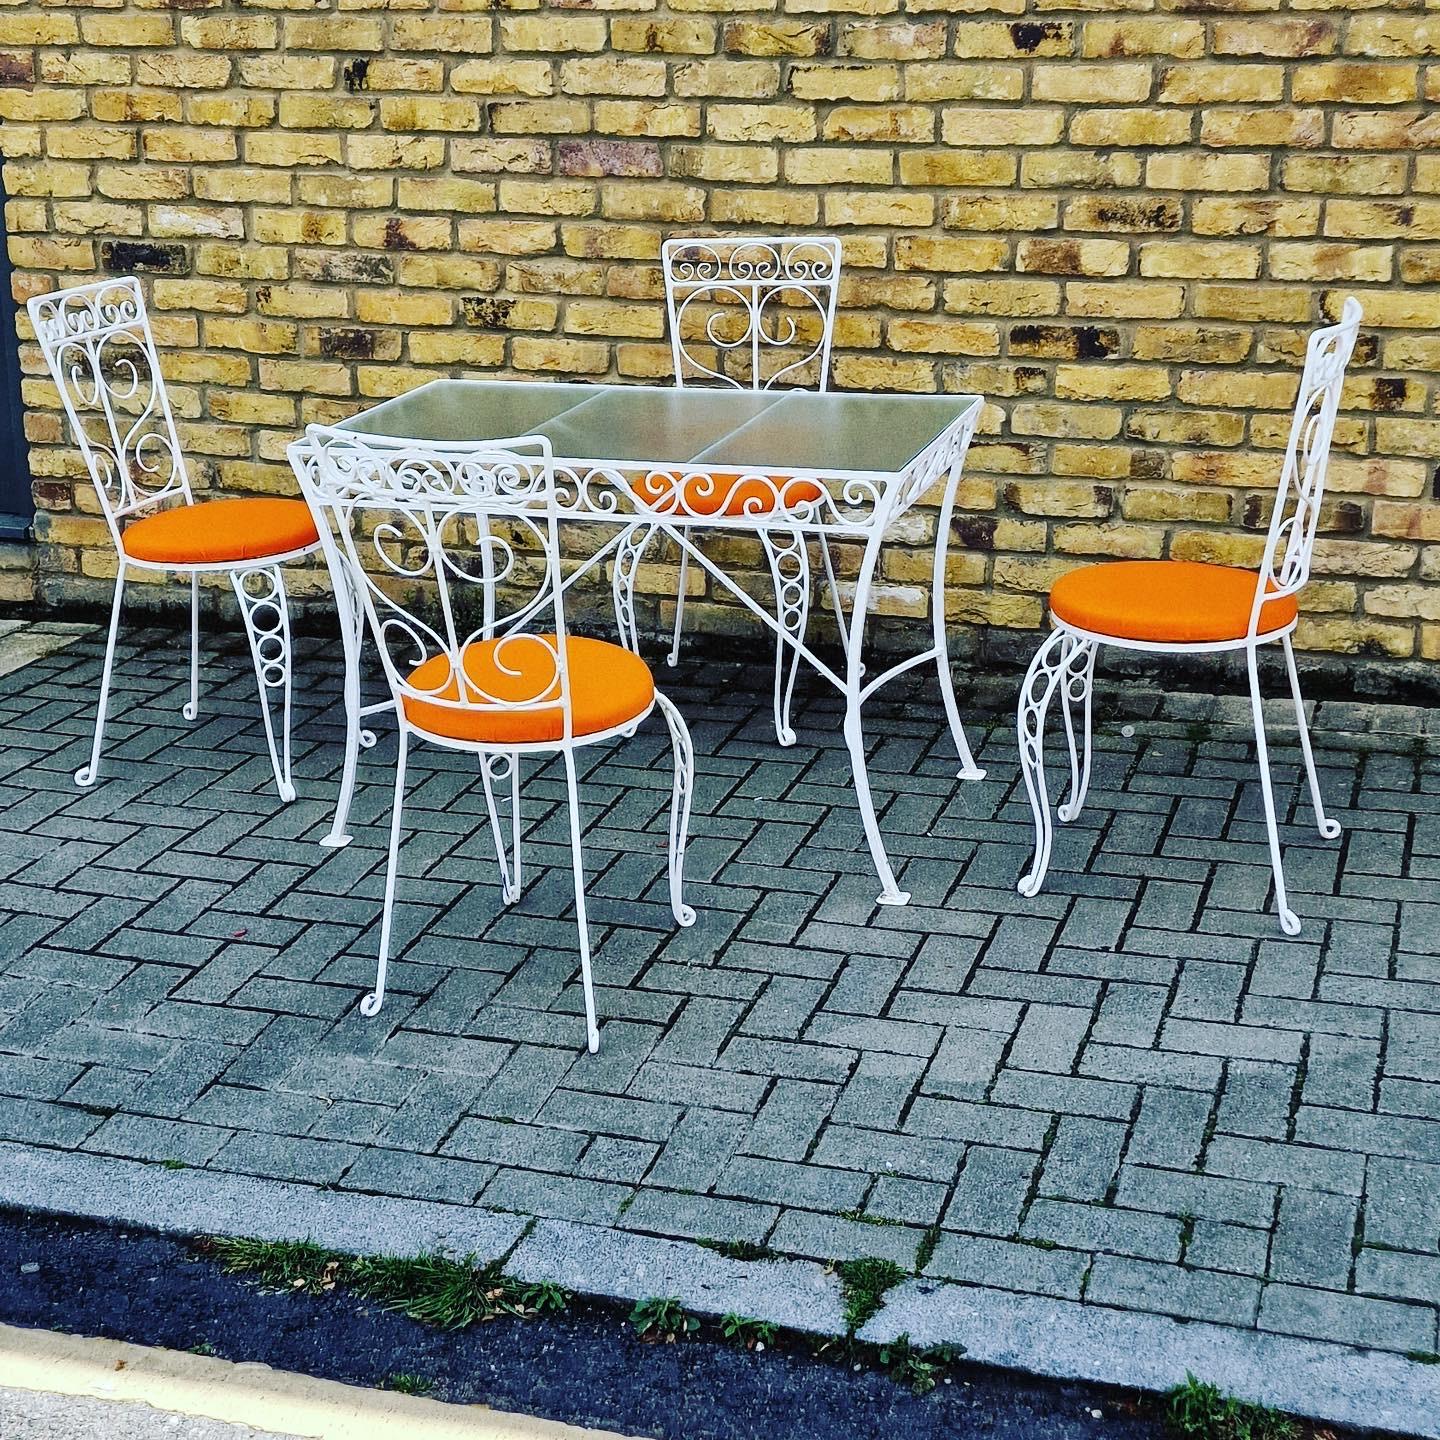 Dies ist ein kompaktes Gartenset mit dekorativem Glastisch aus Metall und 4 orangefarbenen Stühlen mit Sitzfläche.

Französisch aus den 1950er Jahren.